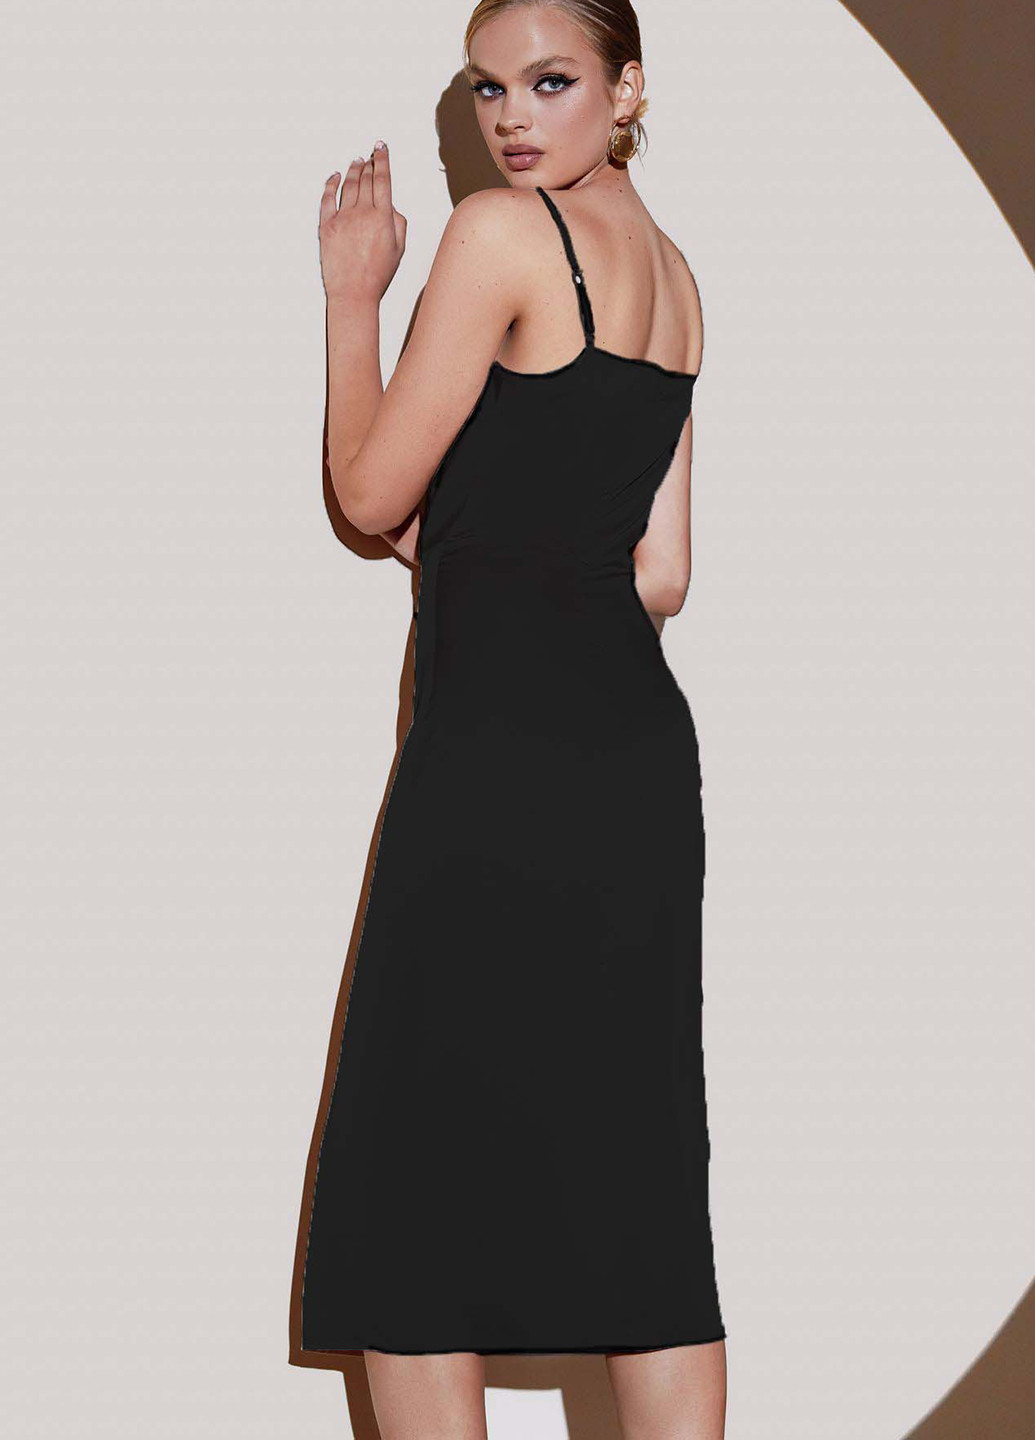 Черное коктейльное платье платье-комбинация, футляр Vovk однотонное